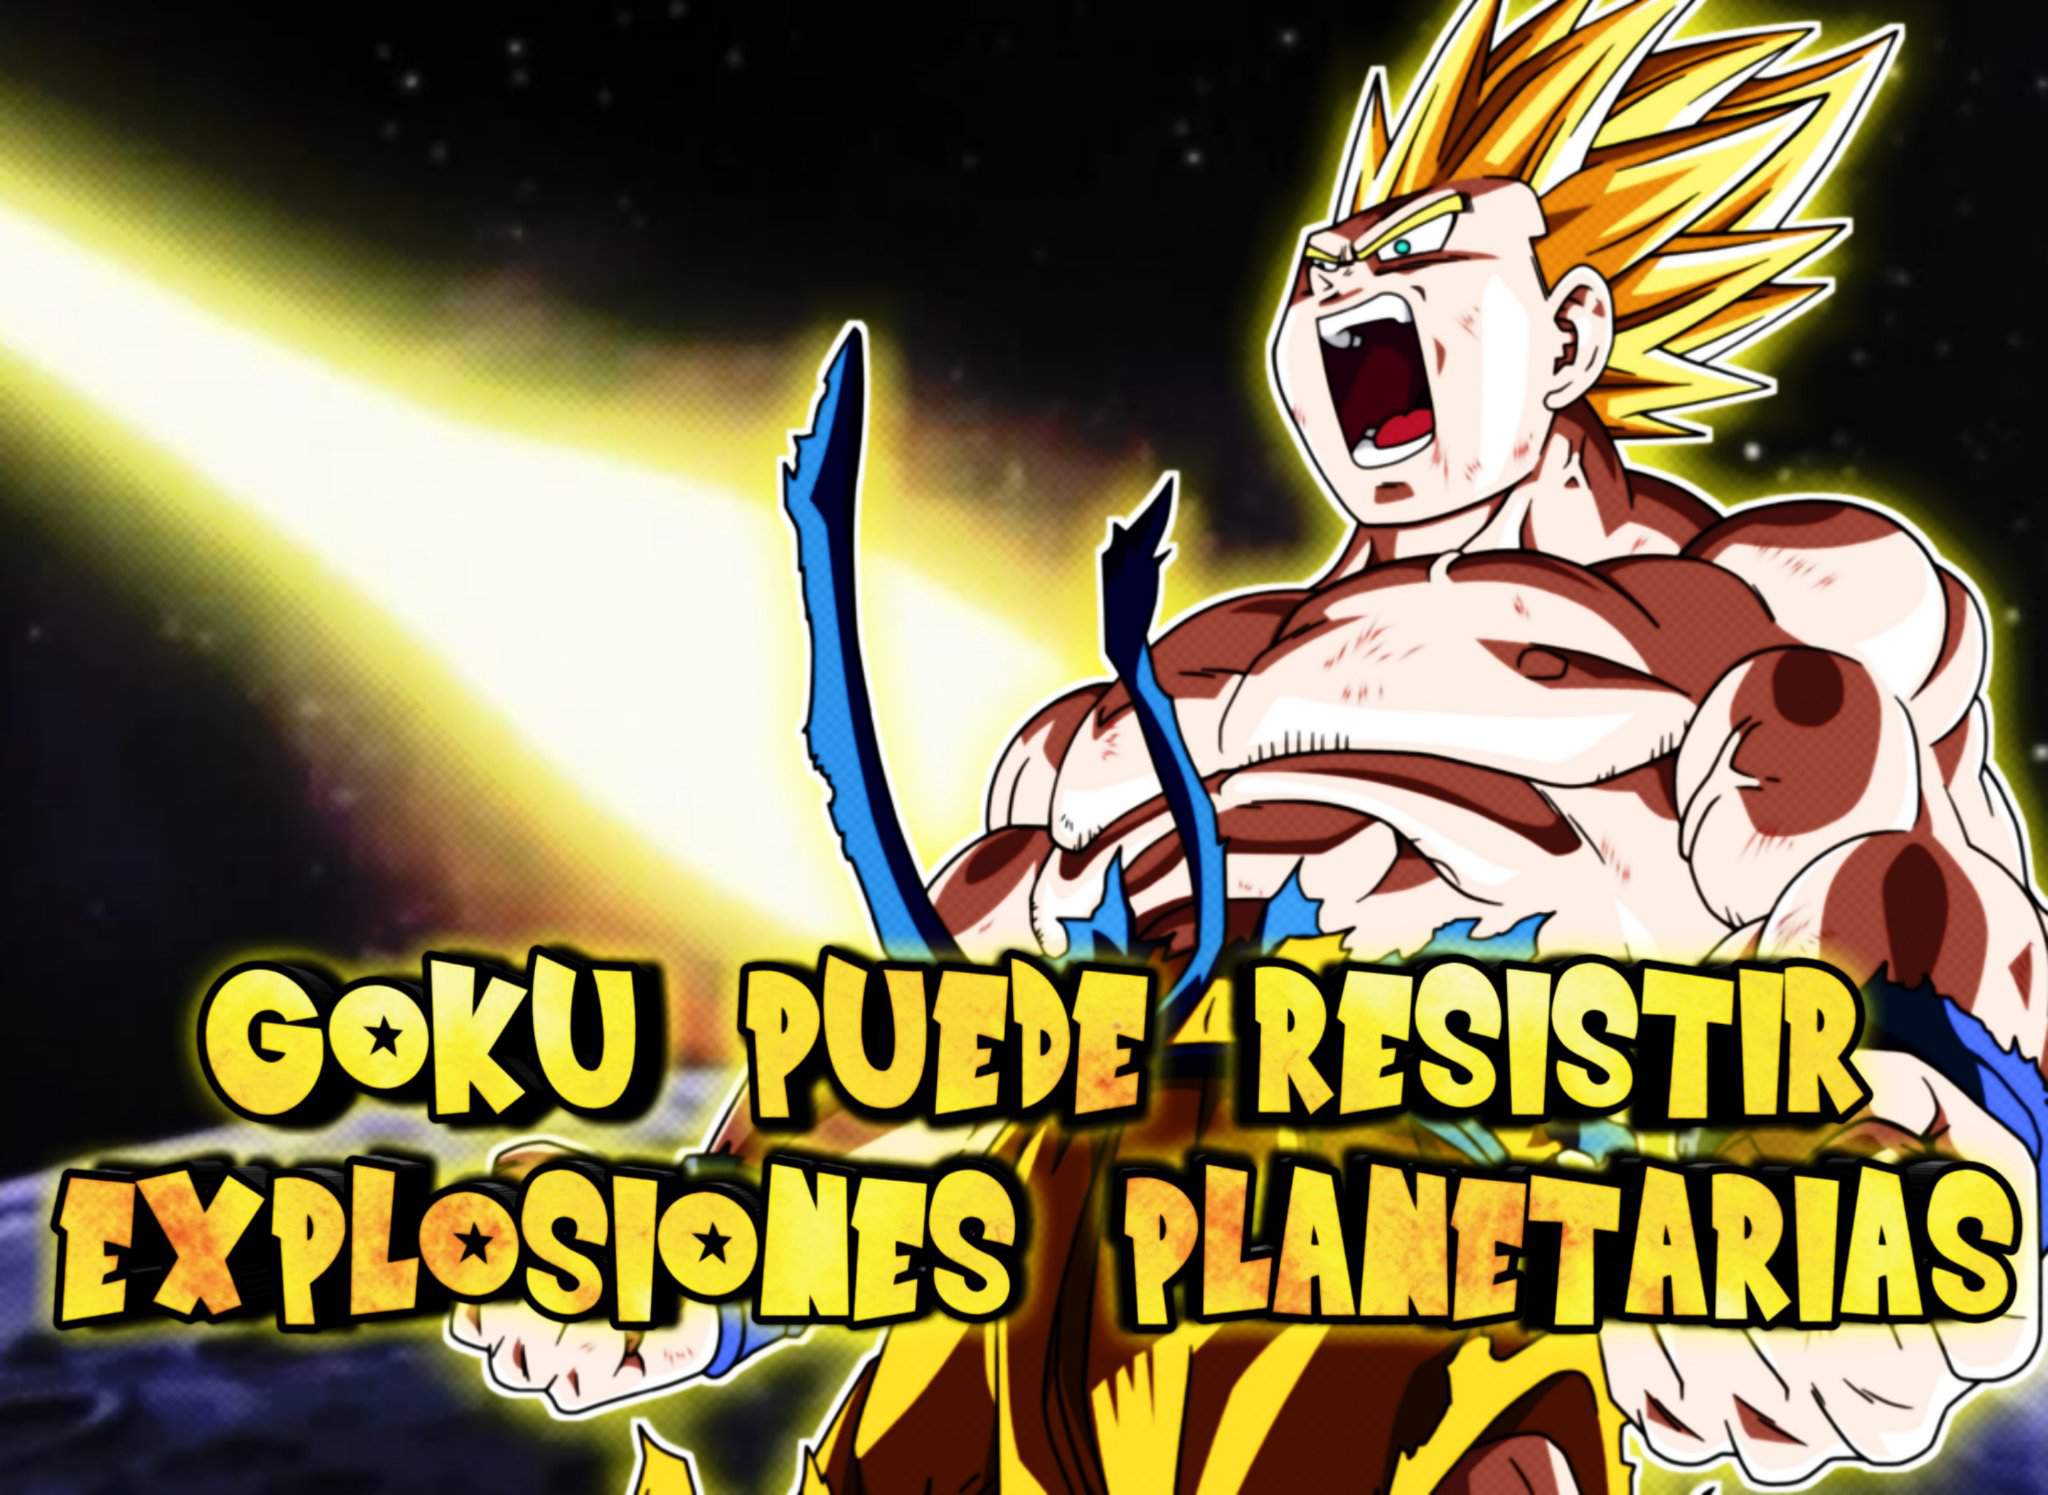 ????Goku puede resistir explosiones planetarias???? | DRAGON BALL ESPAÑOL Amino